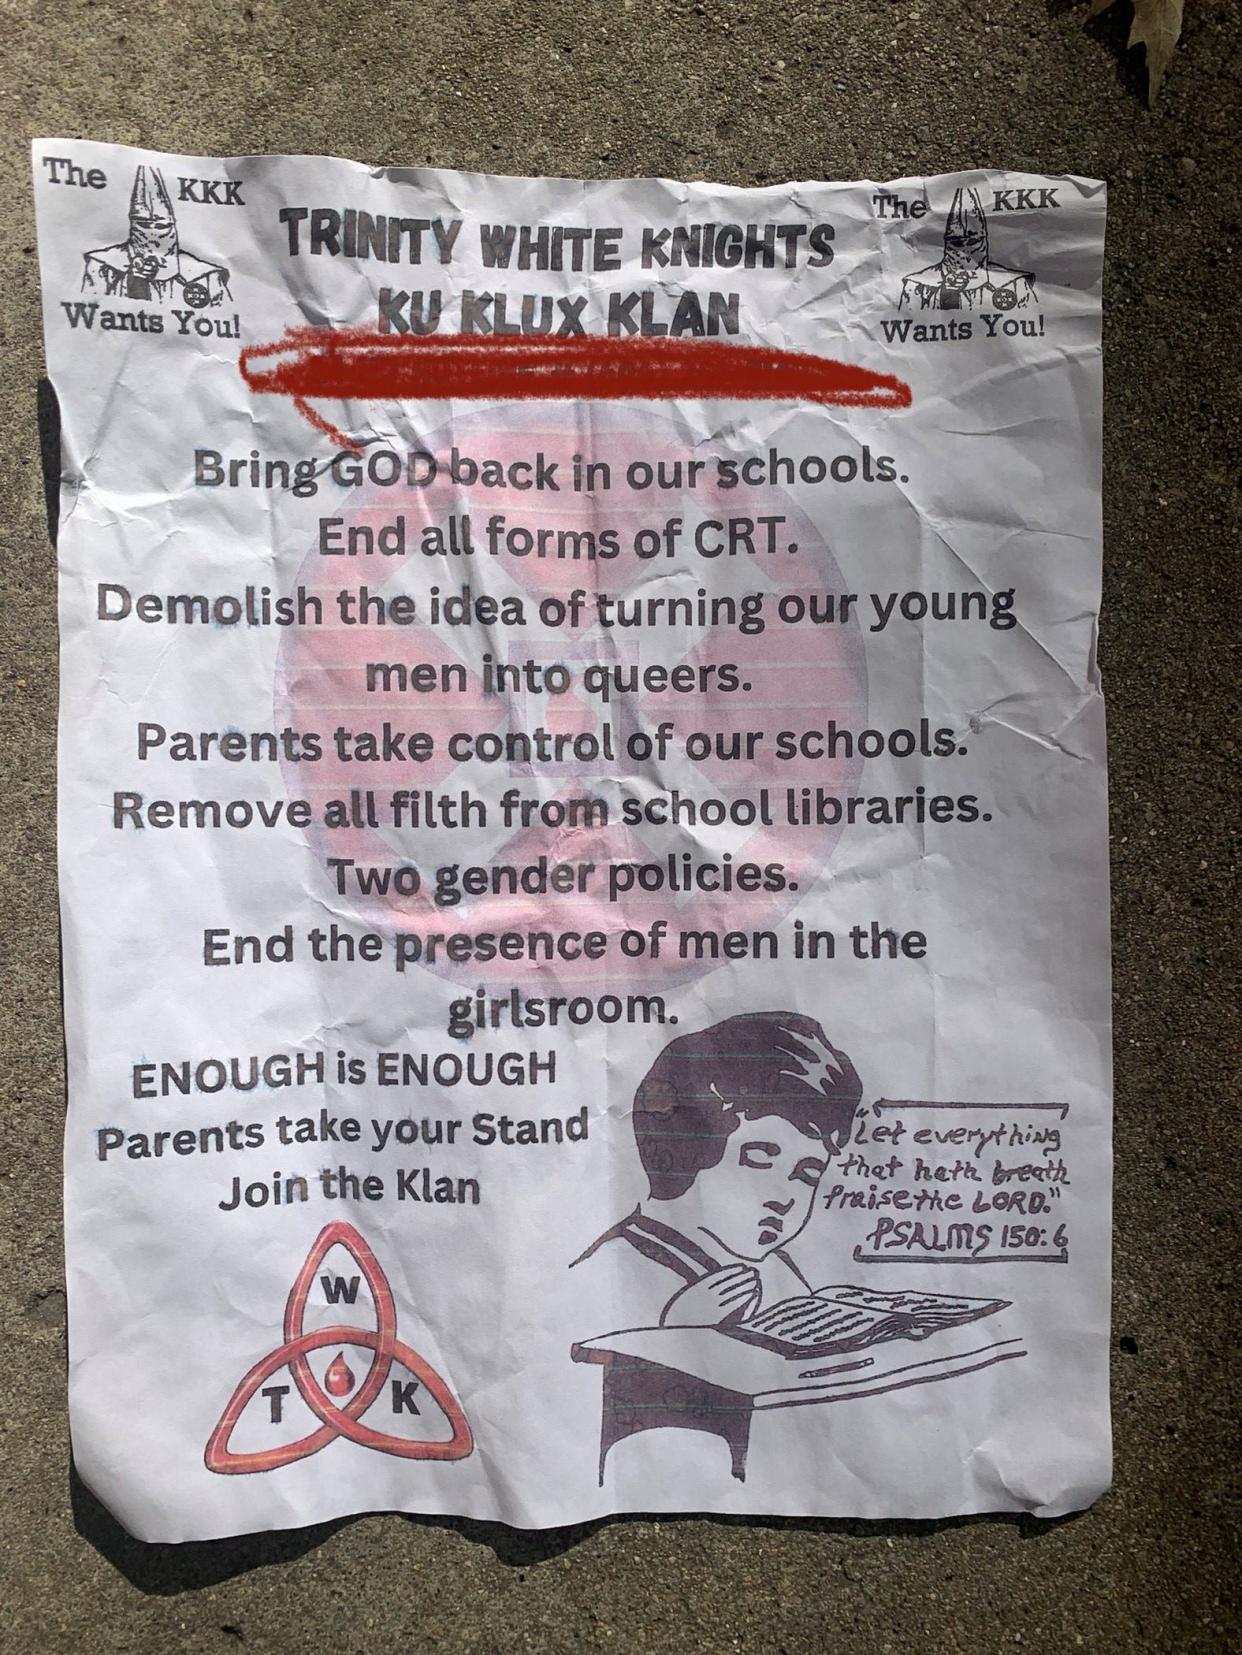 A KKK flyer distributed in Carmel neighborhoods.